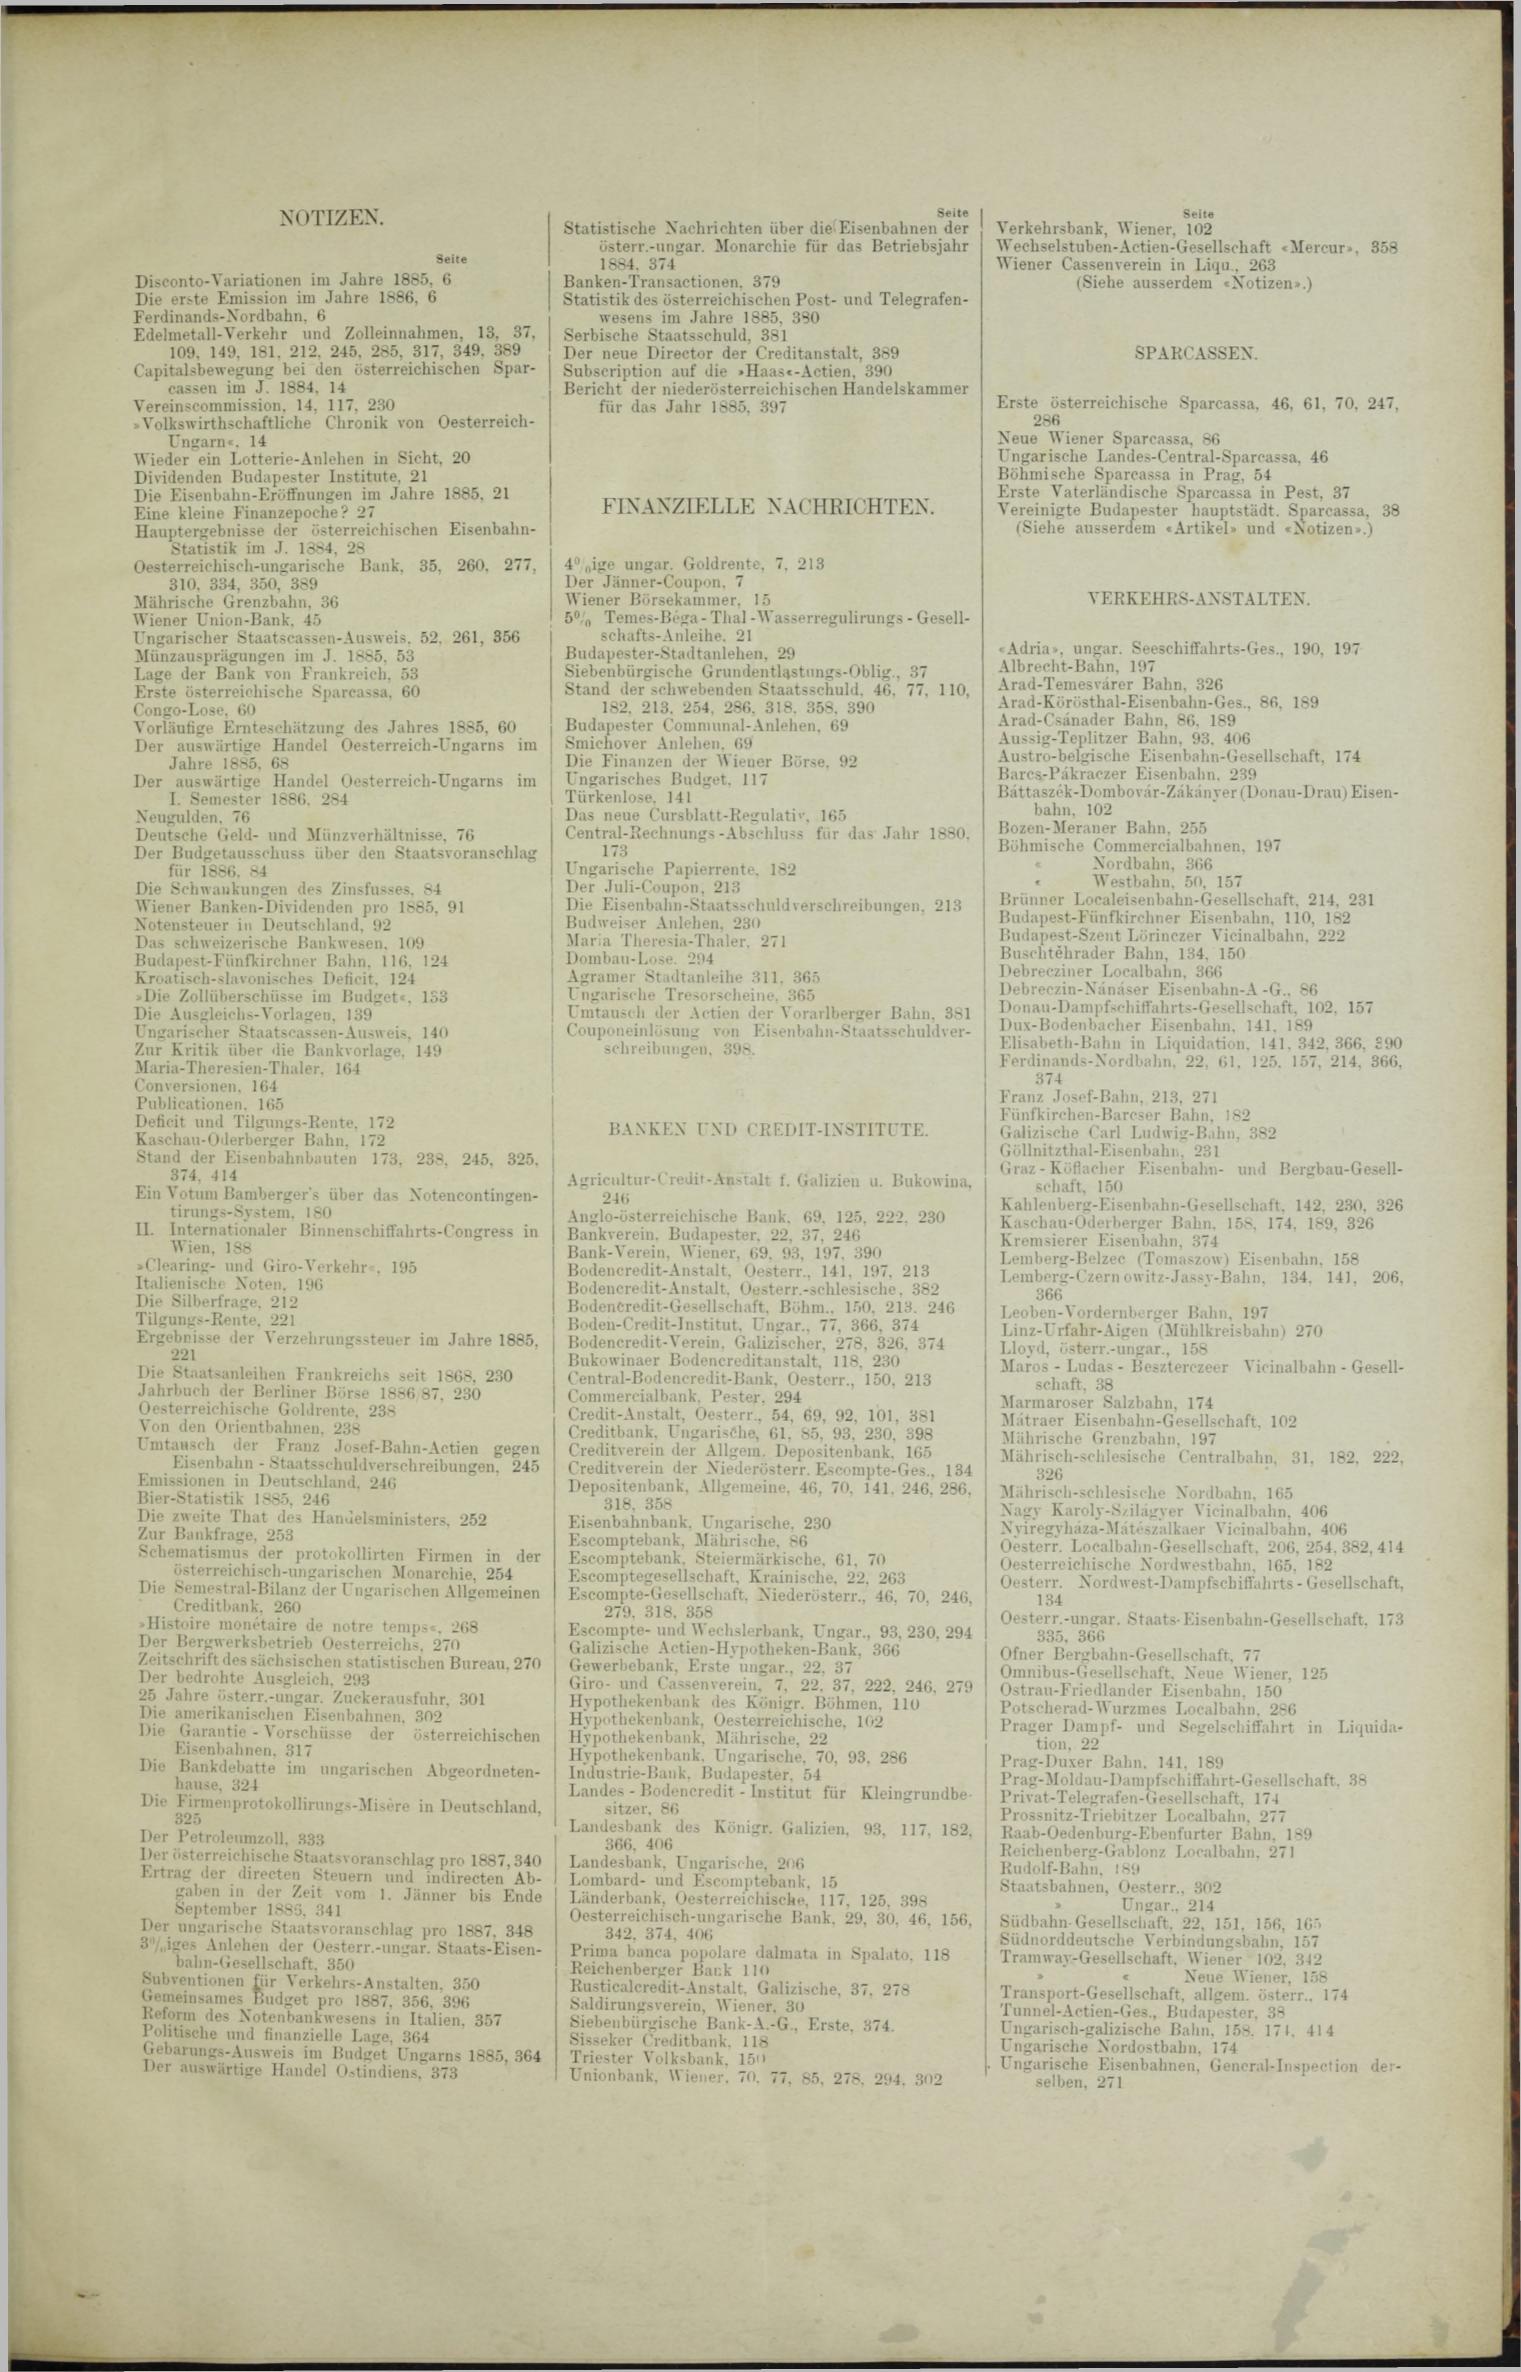 Der Tresor 25.02.1886 - Seite 11